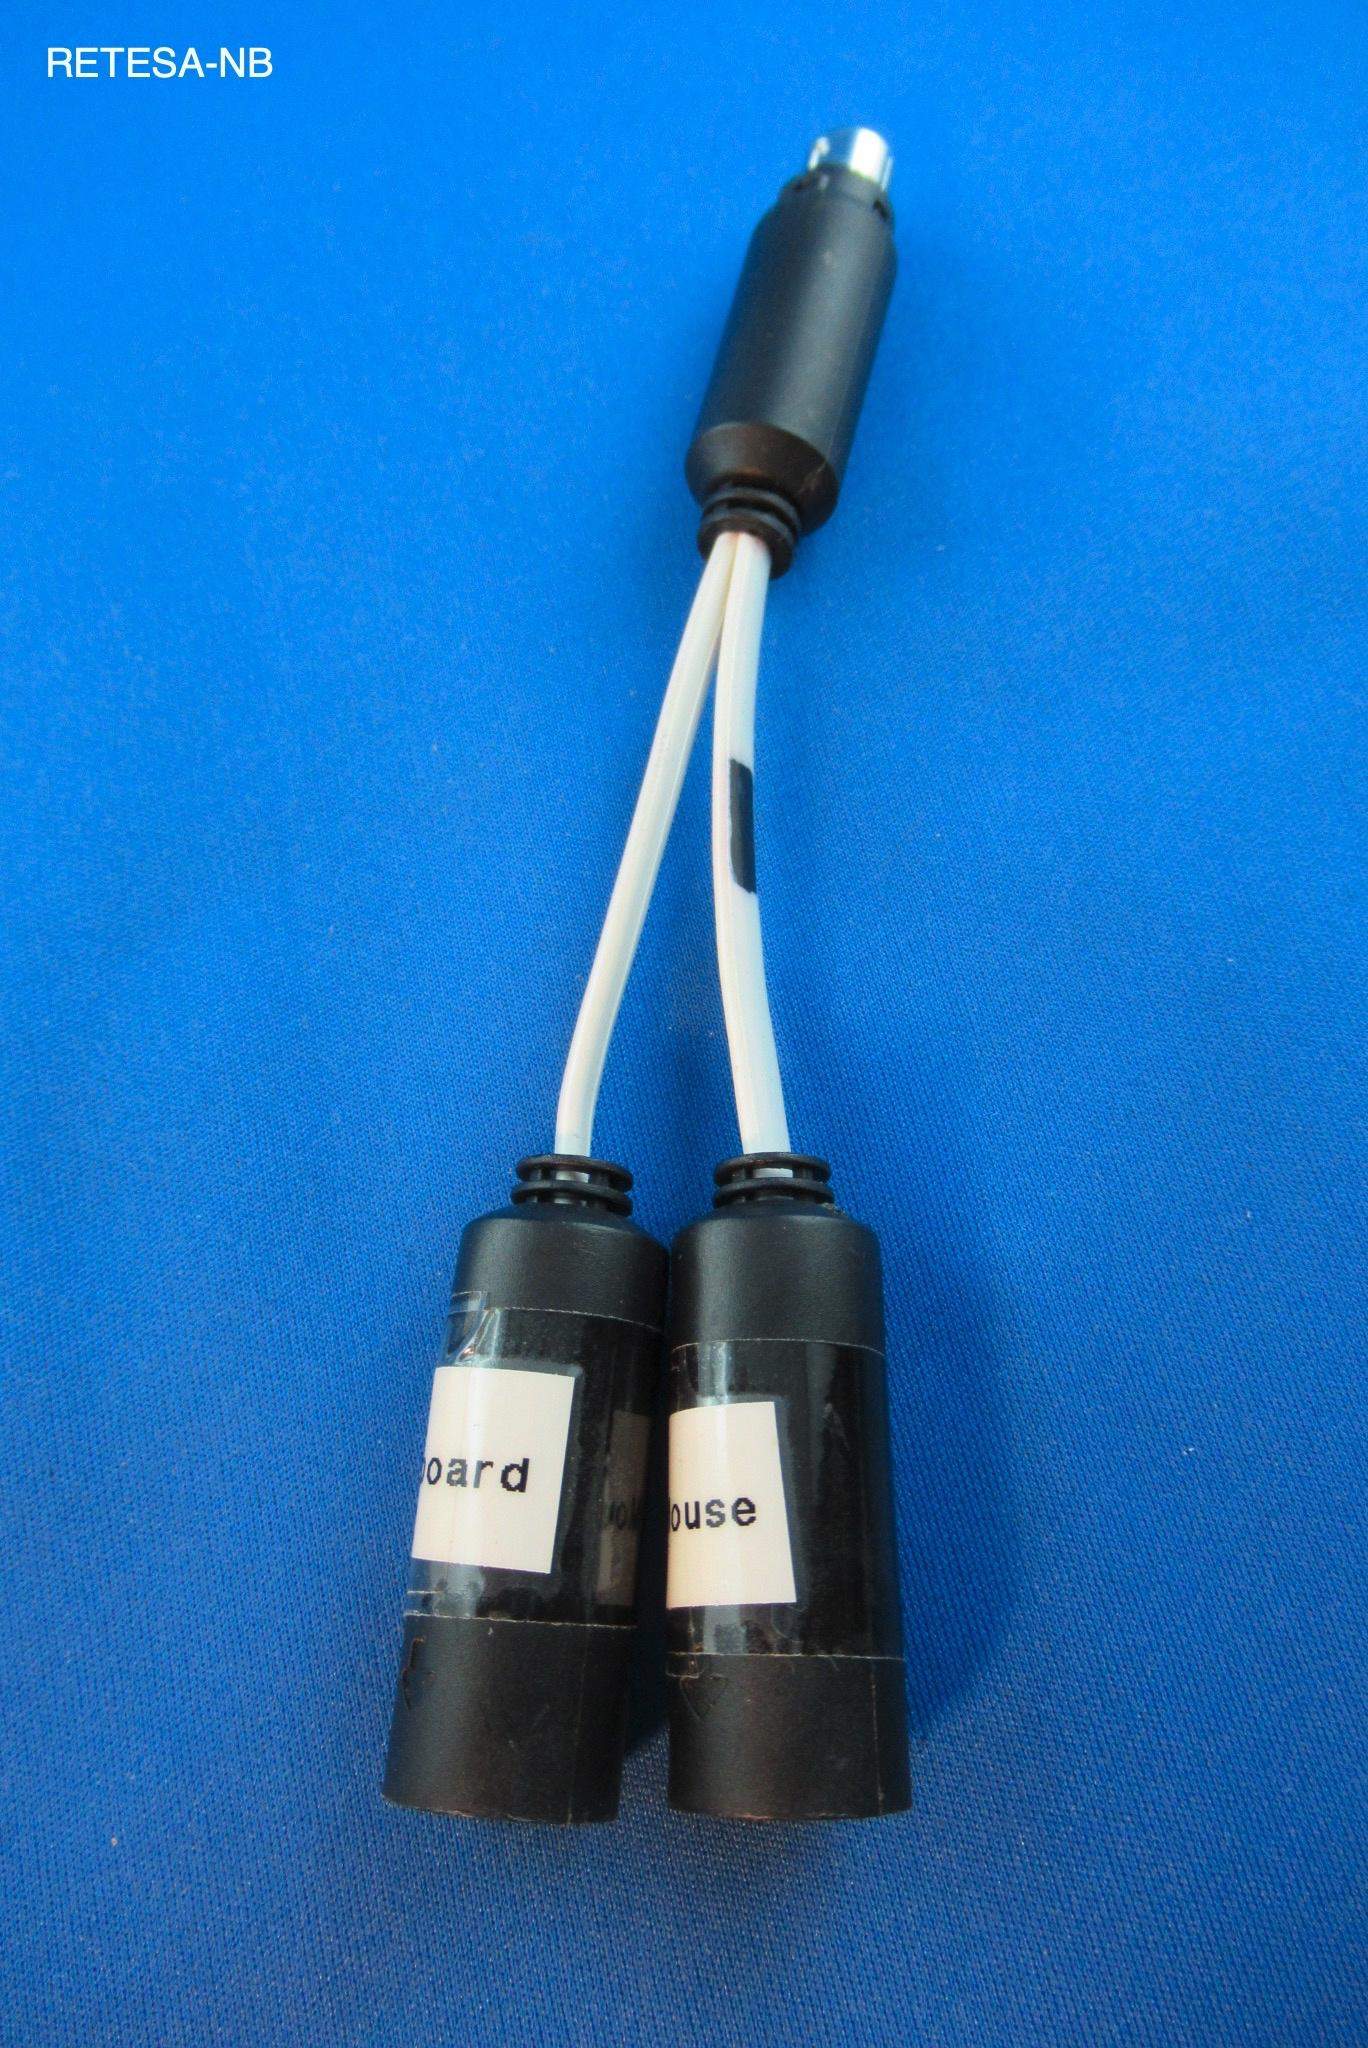 Y-Kabel zum Anschluss von 2 PS/2-Geräten